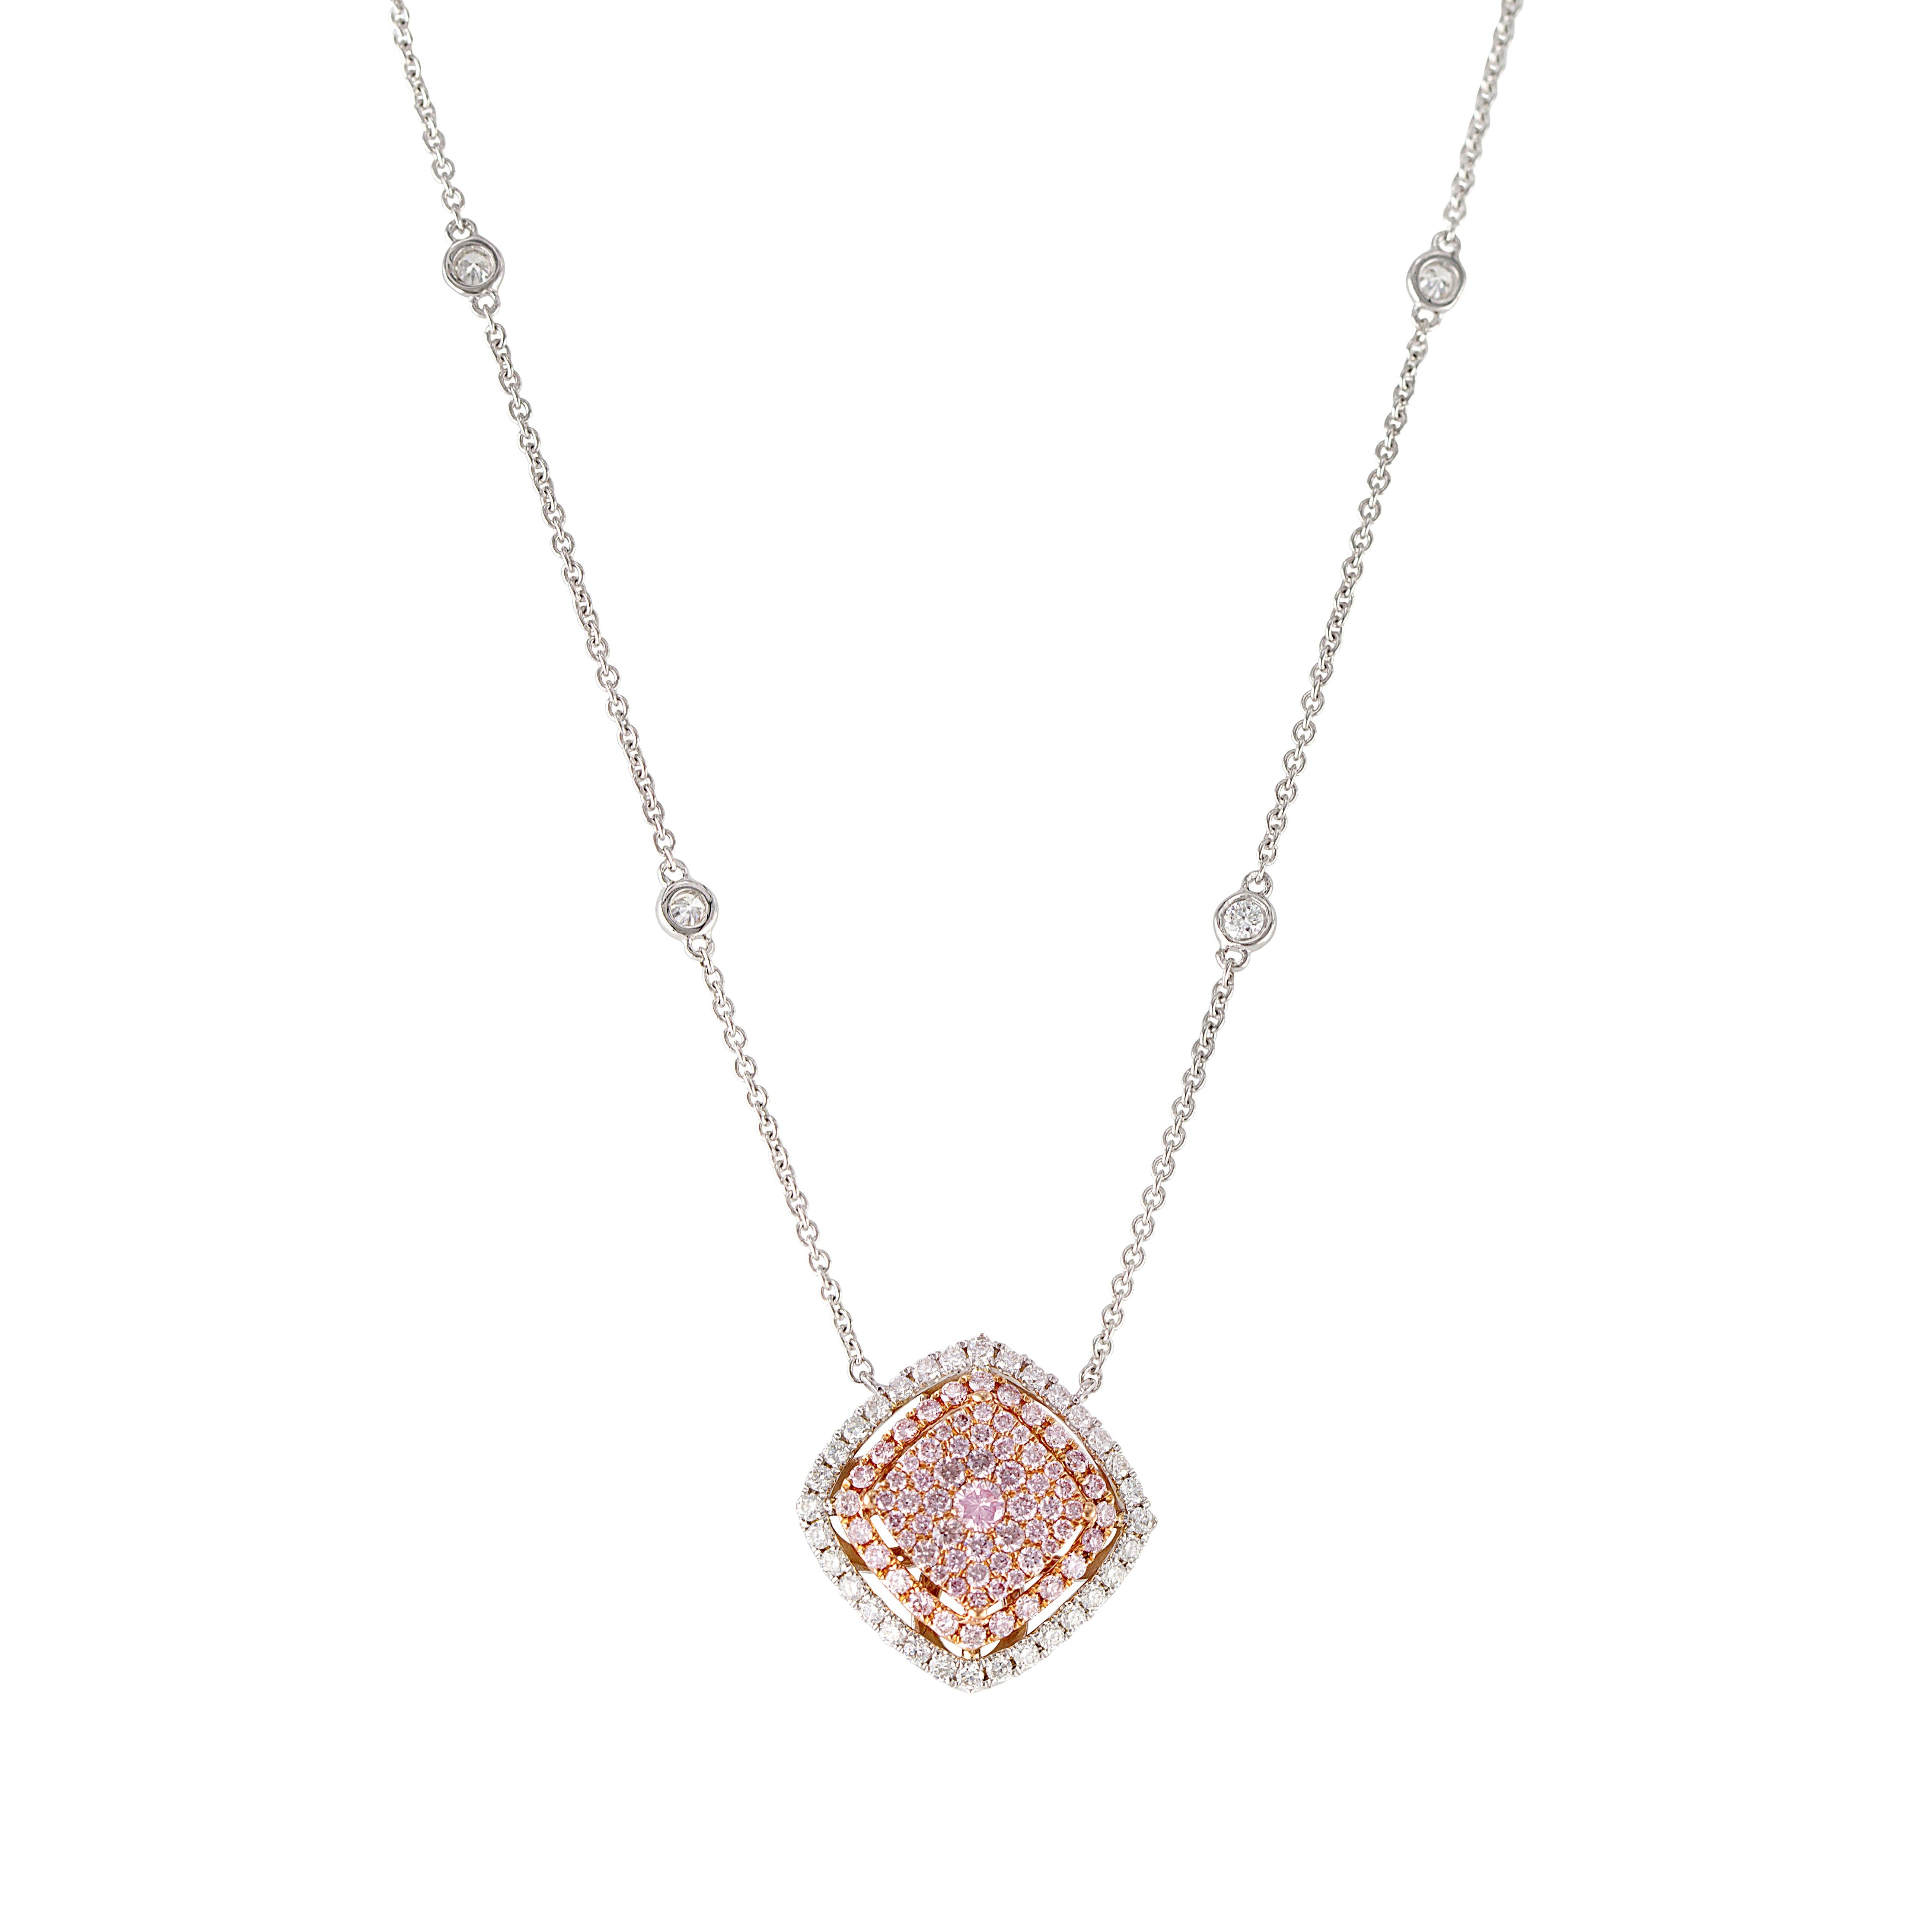 Eleganz kennt keine Grenzen mit unserem faszinierenden Pink-Diamant-Anhänger. Das Herzstück ist ein Ensemble aus mehreren runden rosafarbenen Diamanten, das den Reiz einer perfekten Kissenform ausstrahlt und von einem strahlenden Halo aus runden